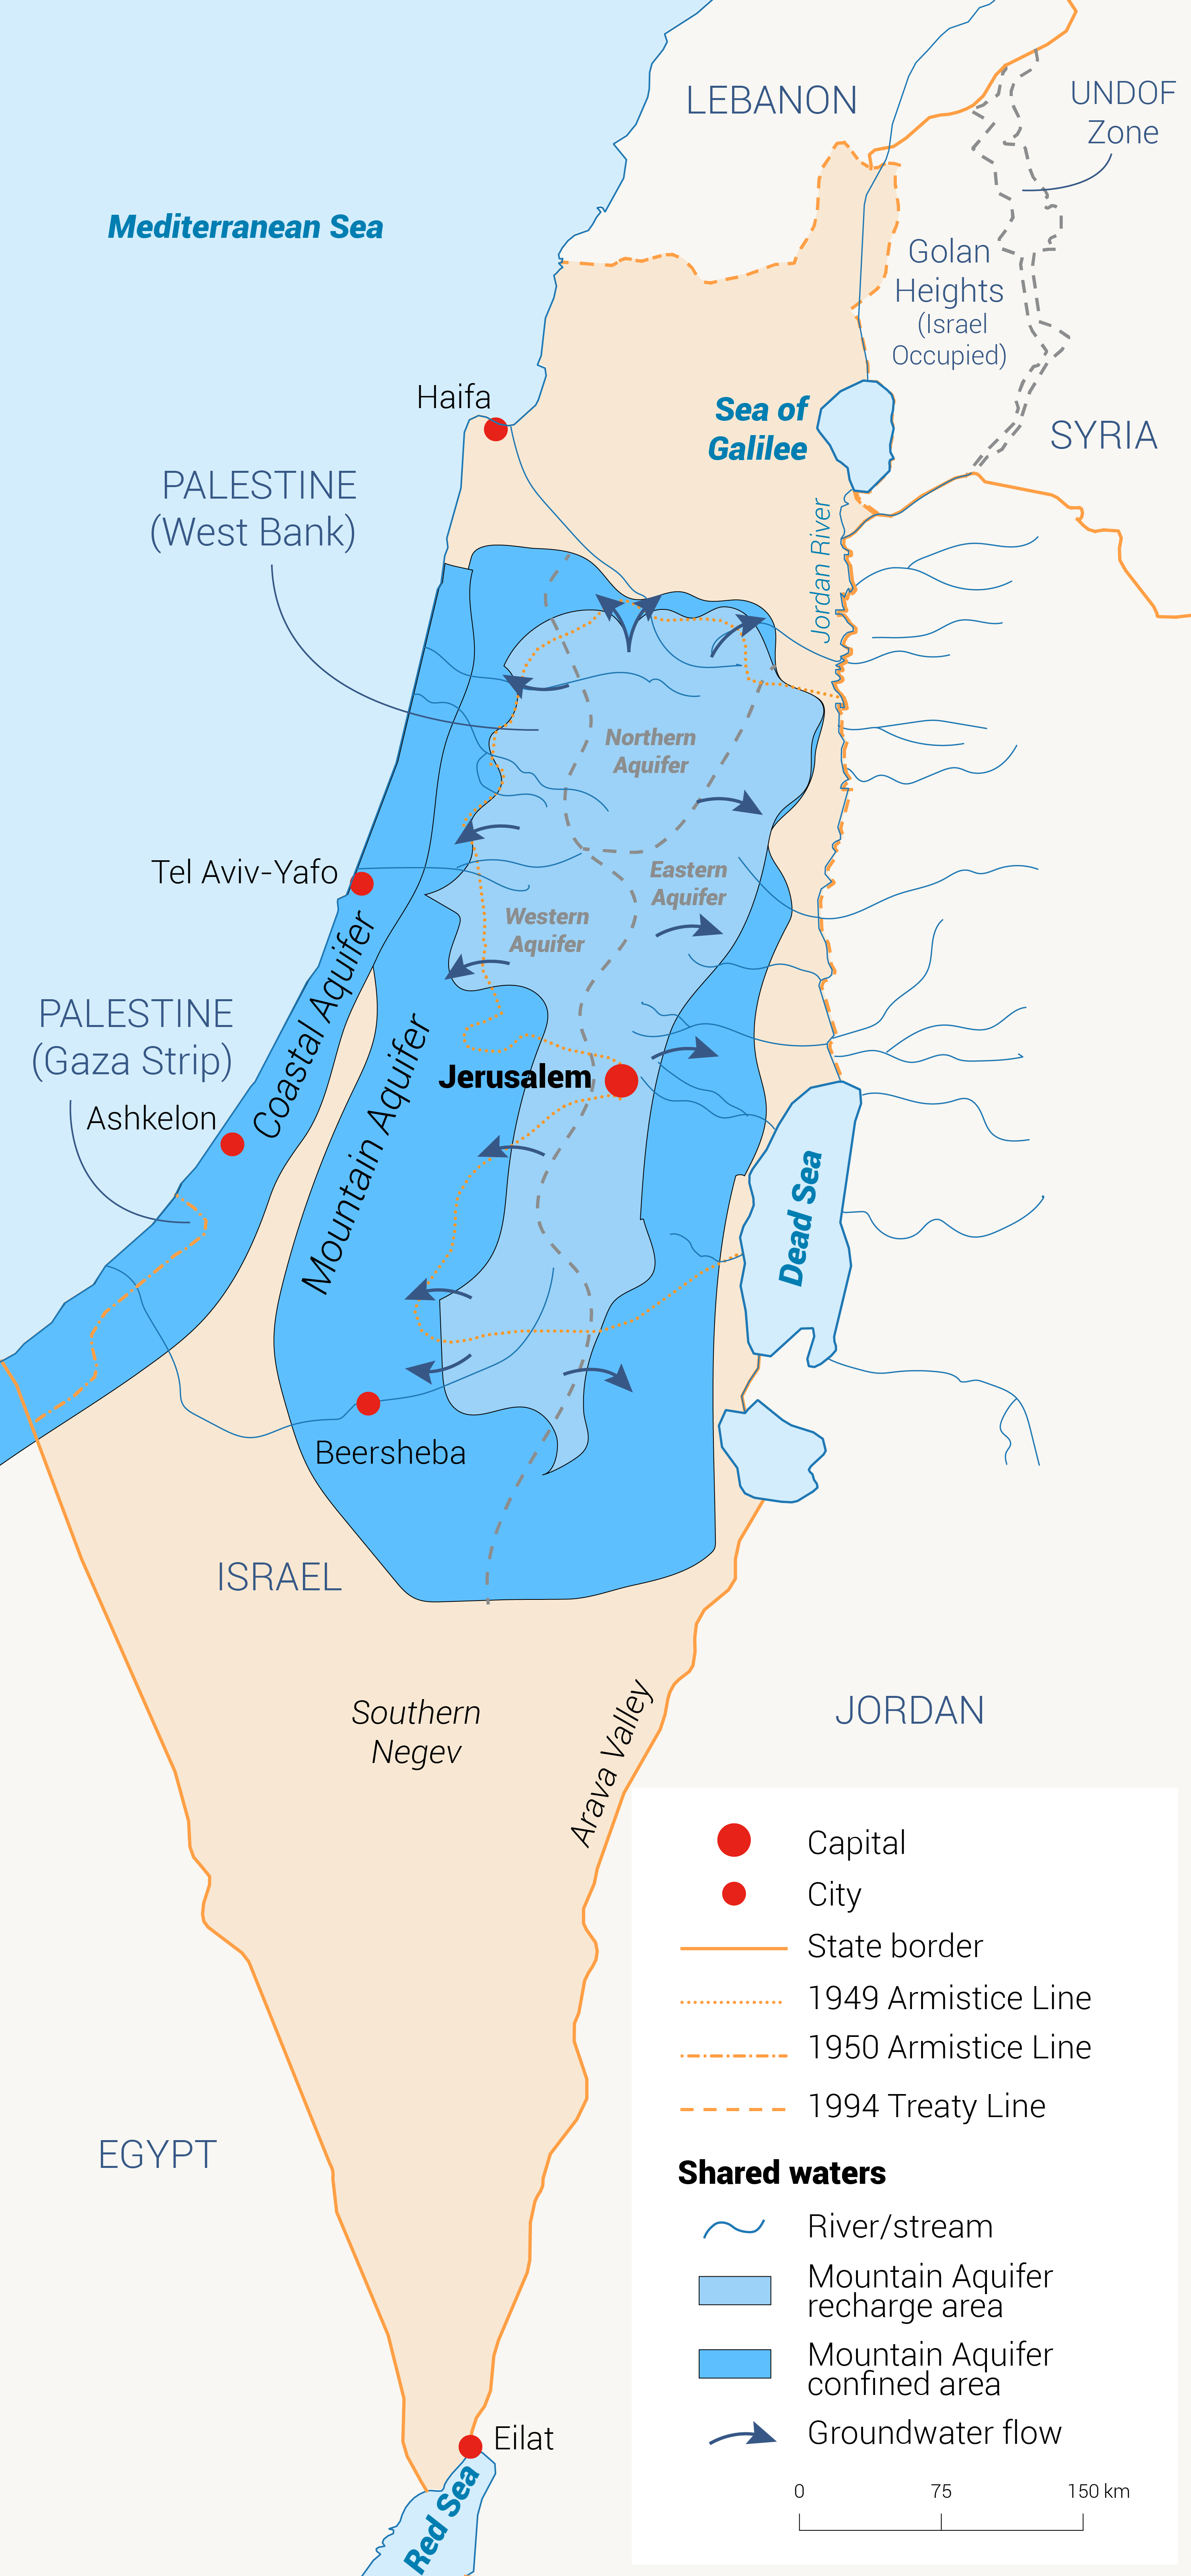 موارد المياه المشتركة في إسرائيل